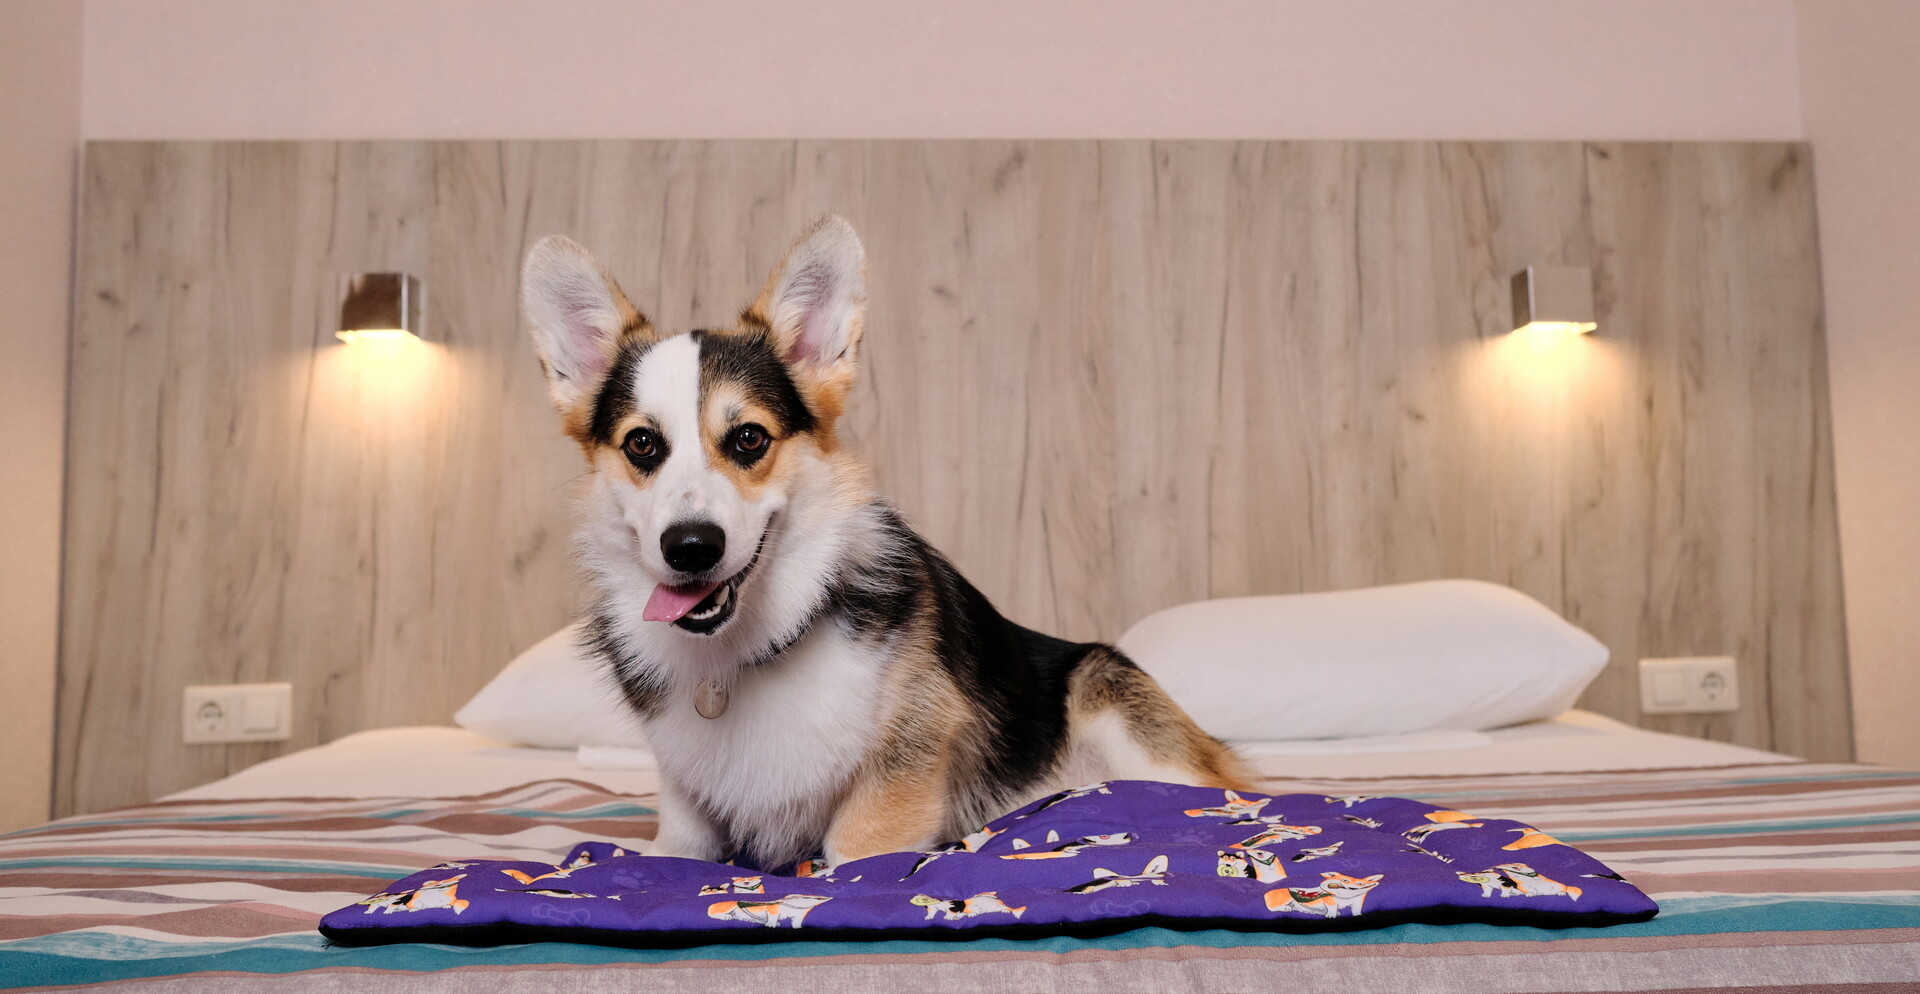 Dog-friendly отели Подмосковья, где можно отдохнуть с четвероногим другом